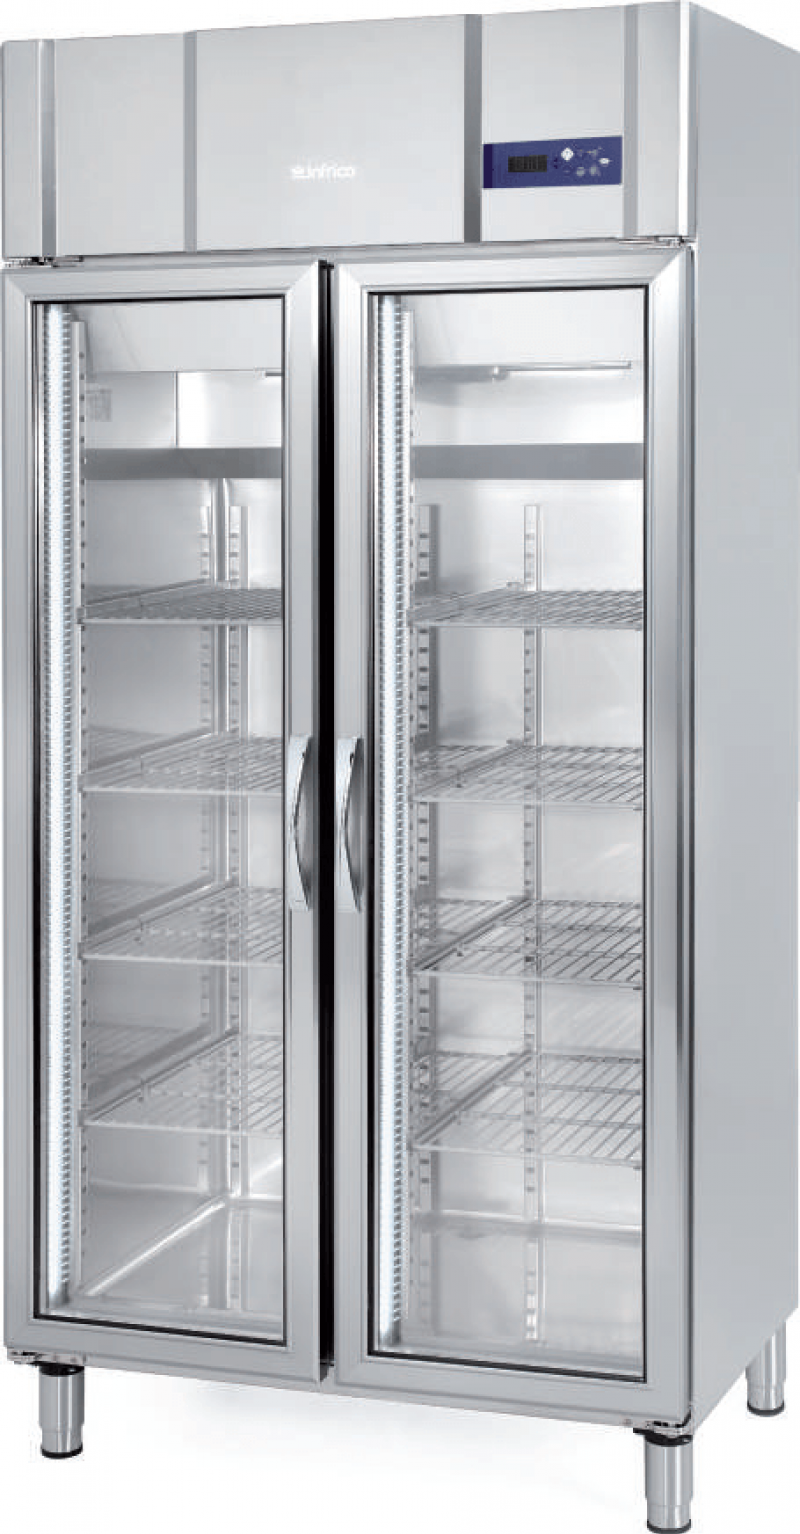 Armario expositor refrigeración gastronorm GN 1/1 Infrico AGN 600 CR